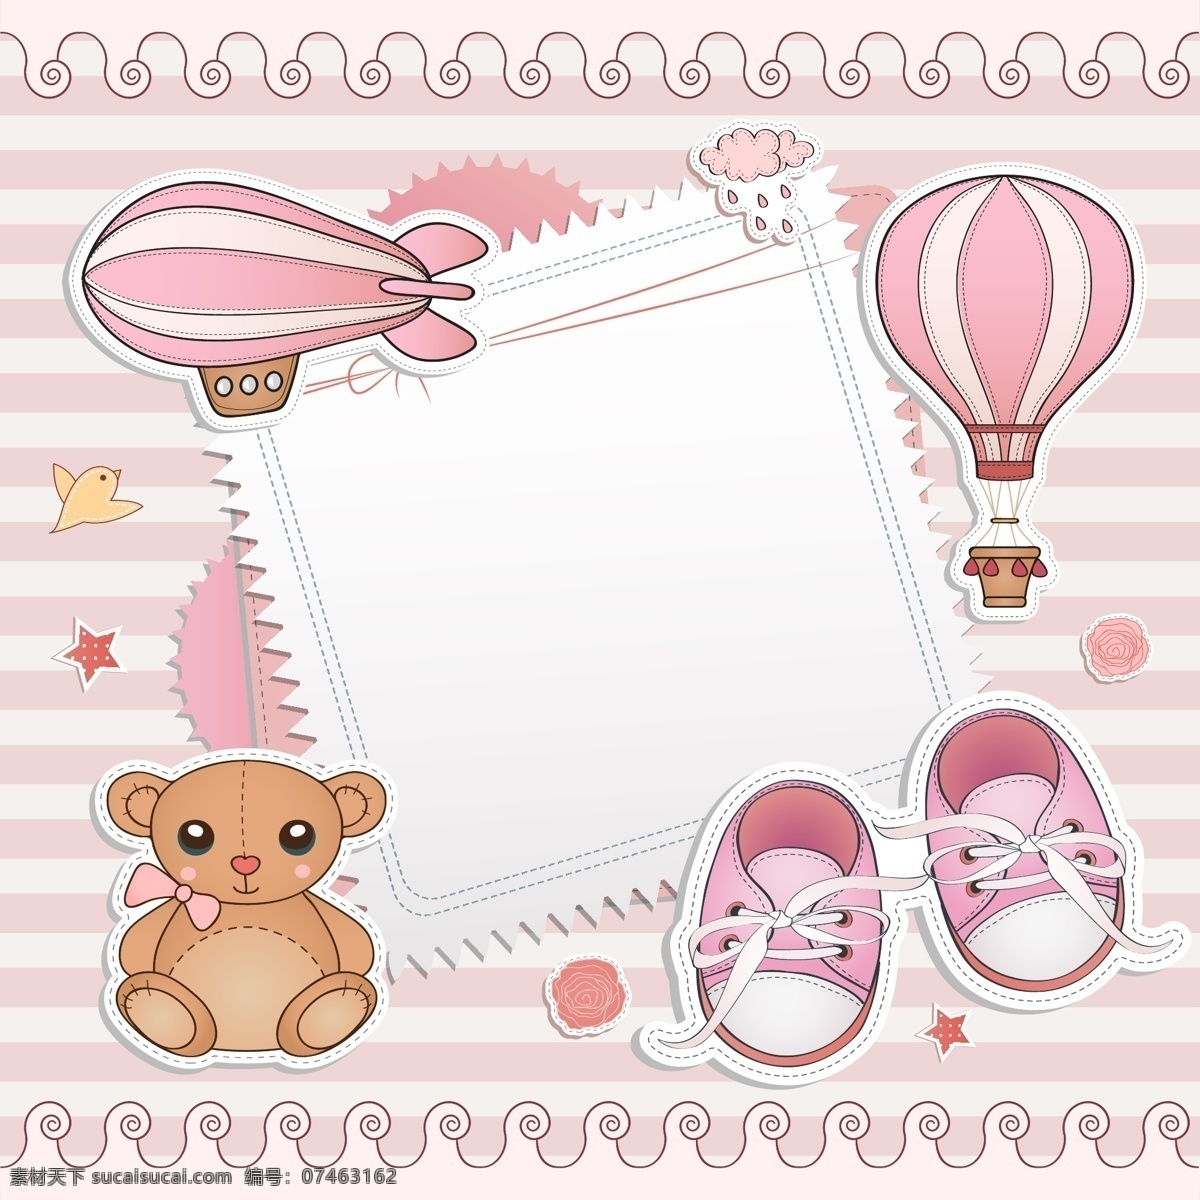 粉色 婴儿 元素 卡片 矢量 降落伞 鞋子 矢量图 其他矢量图